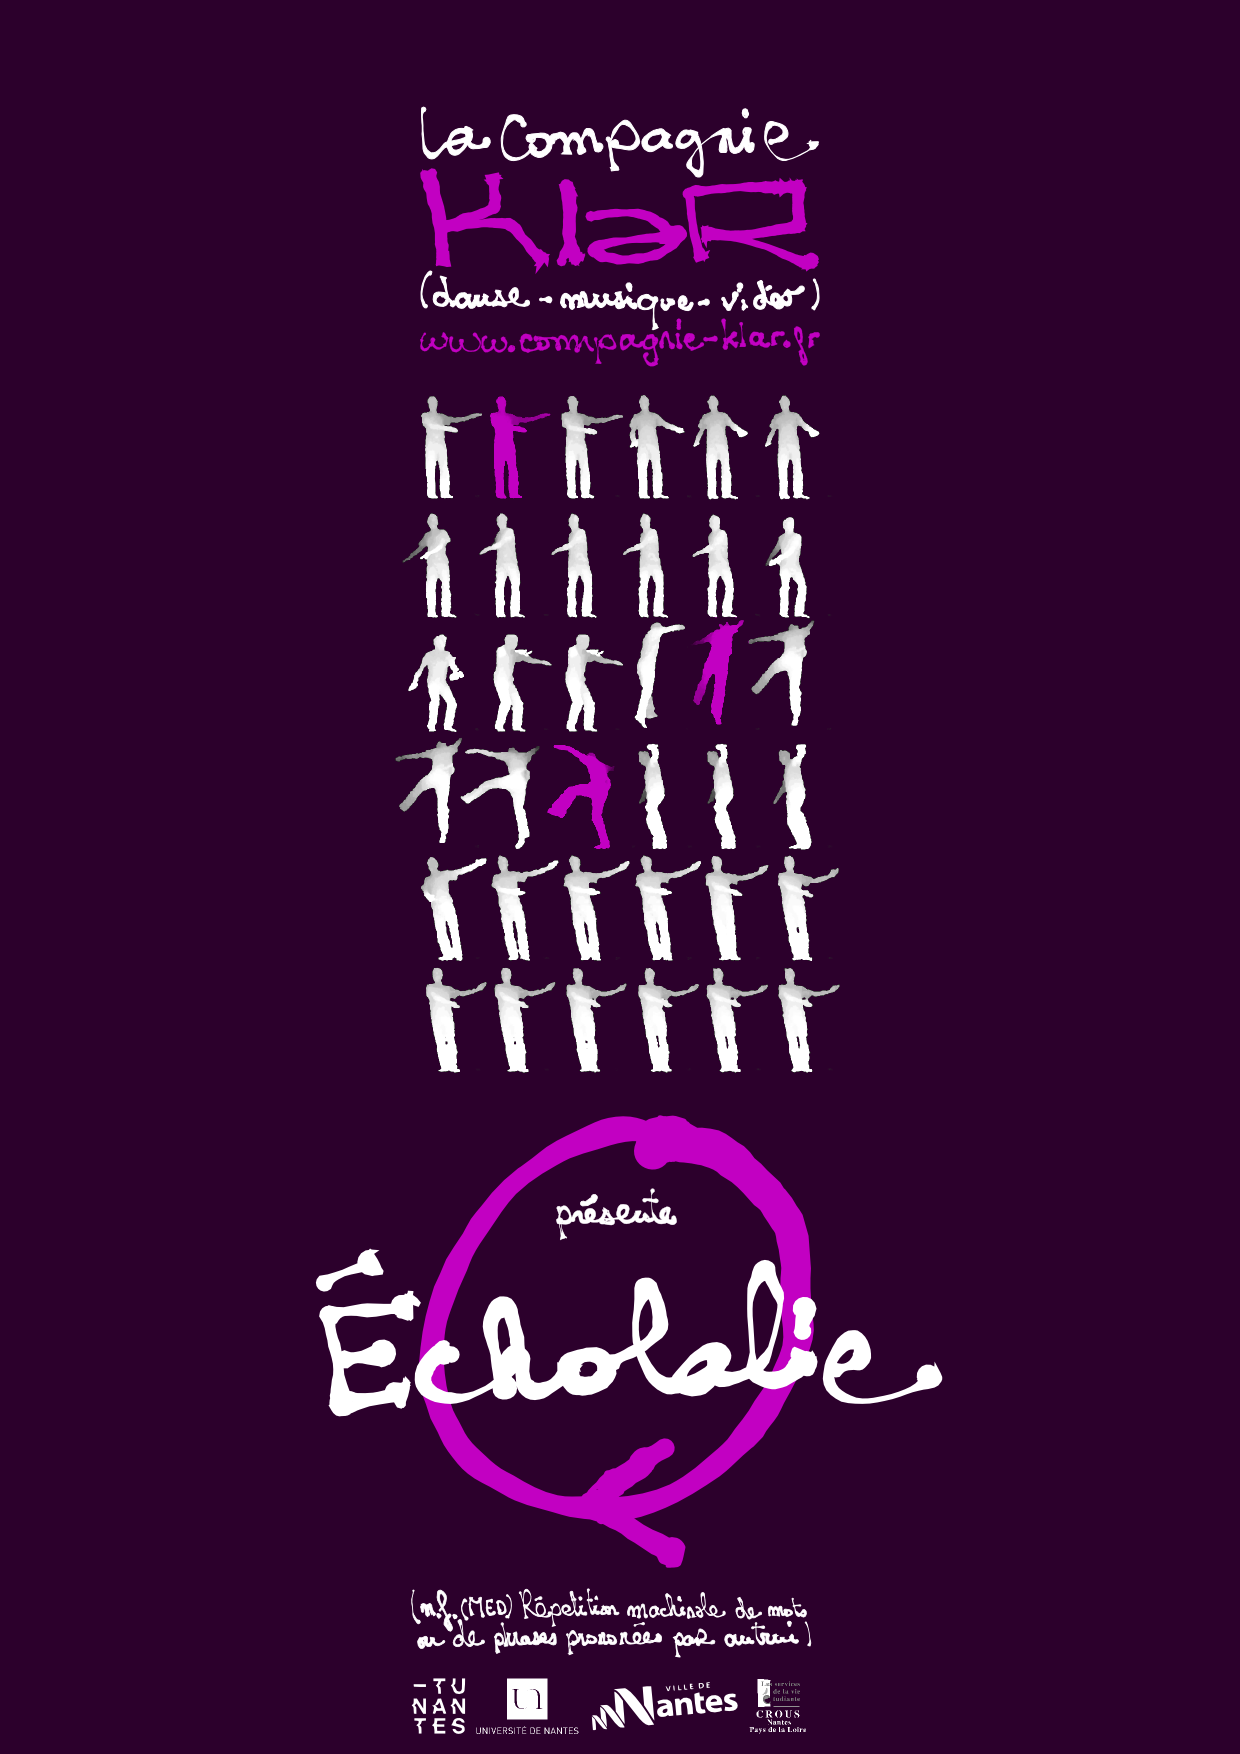 Affiche du spectacle "Écholalie" par la compagnie KlaR